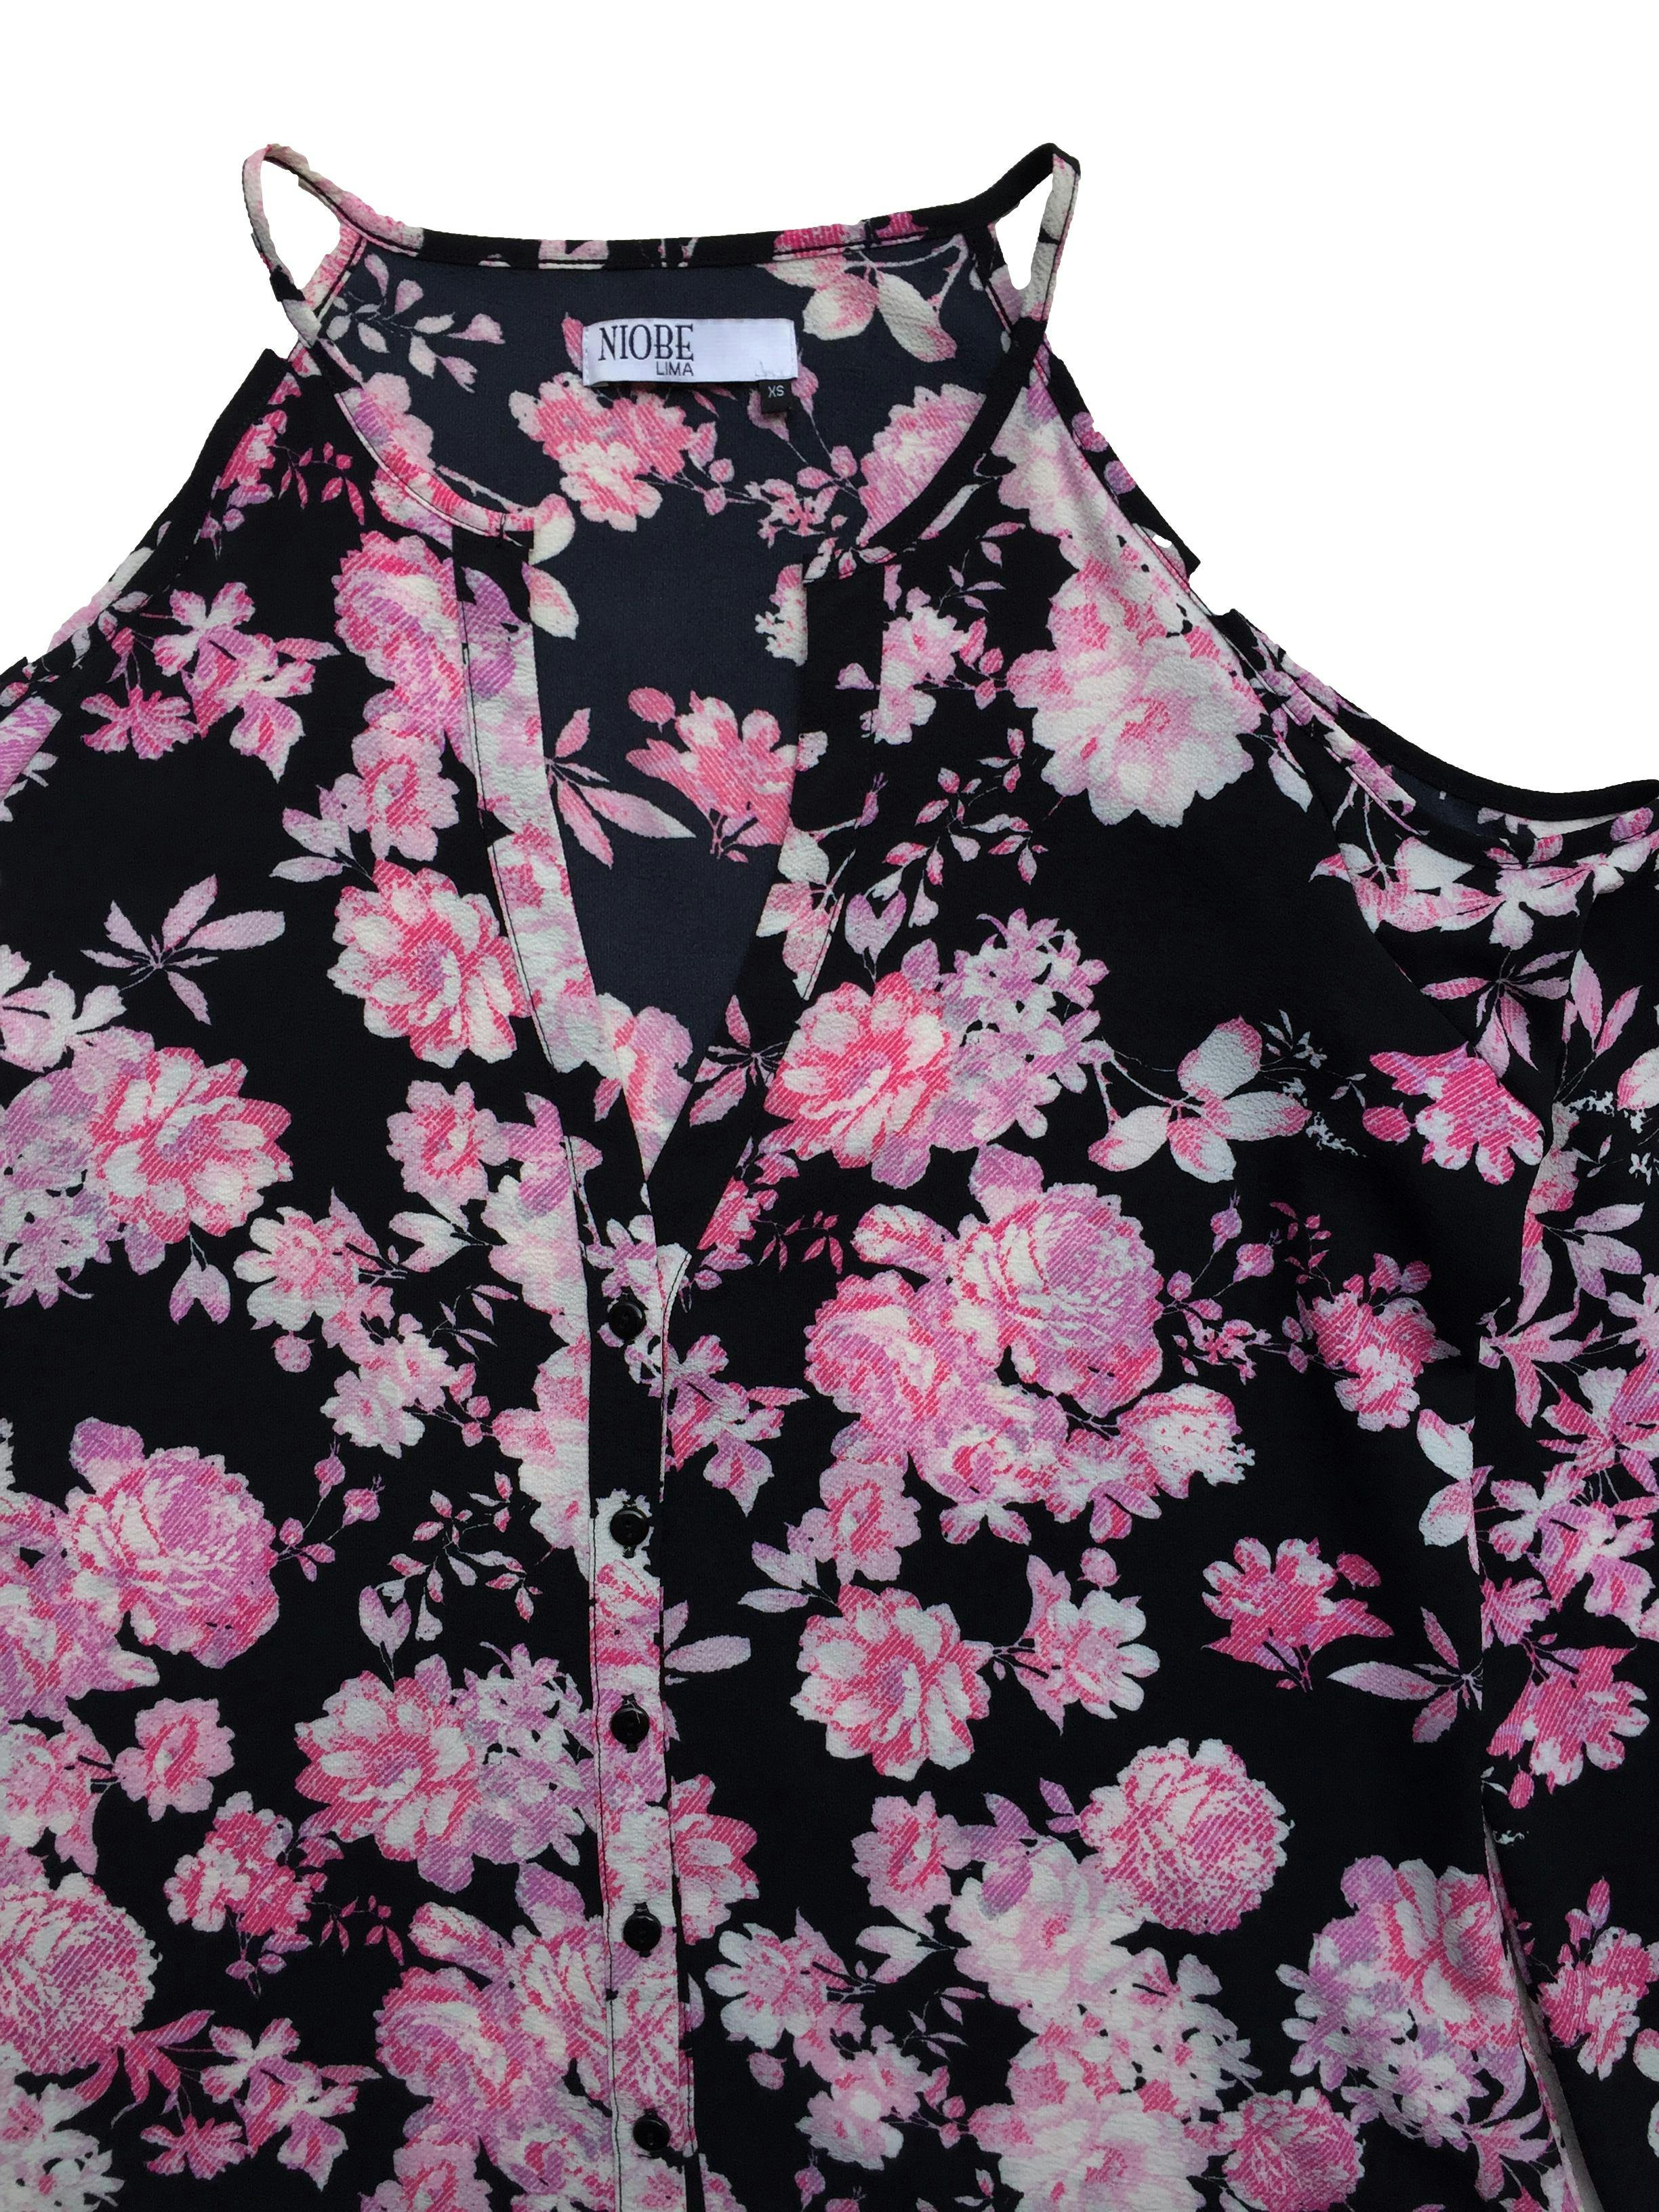 Blusa offshoulder negra con flores rosadas, botones delanteros. Busto: 94cm, Largo: 60cm